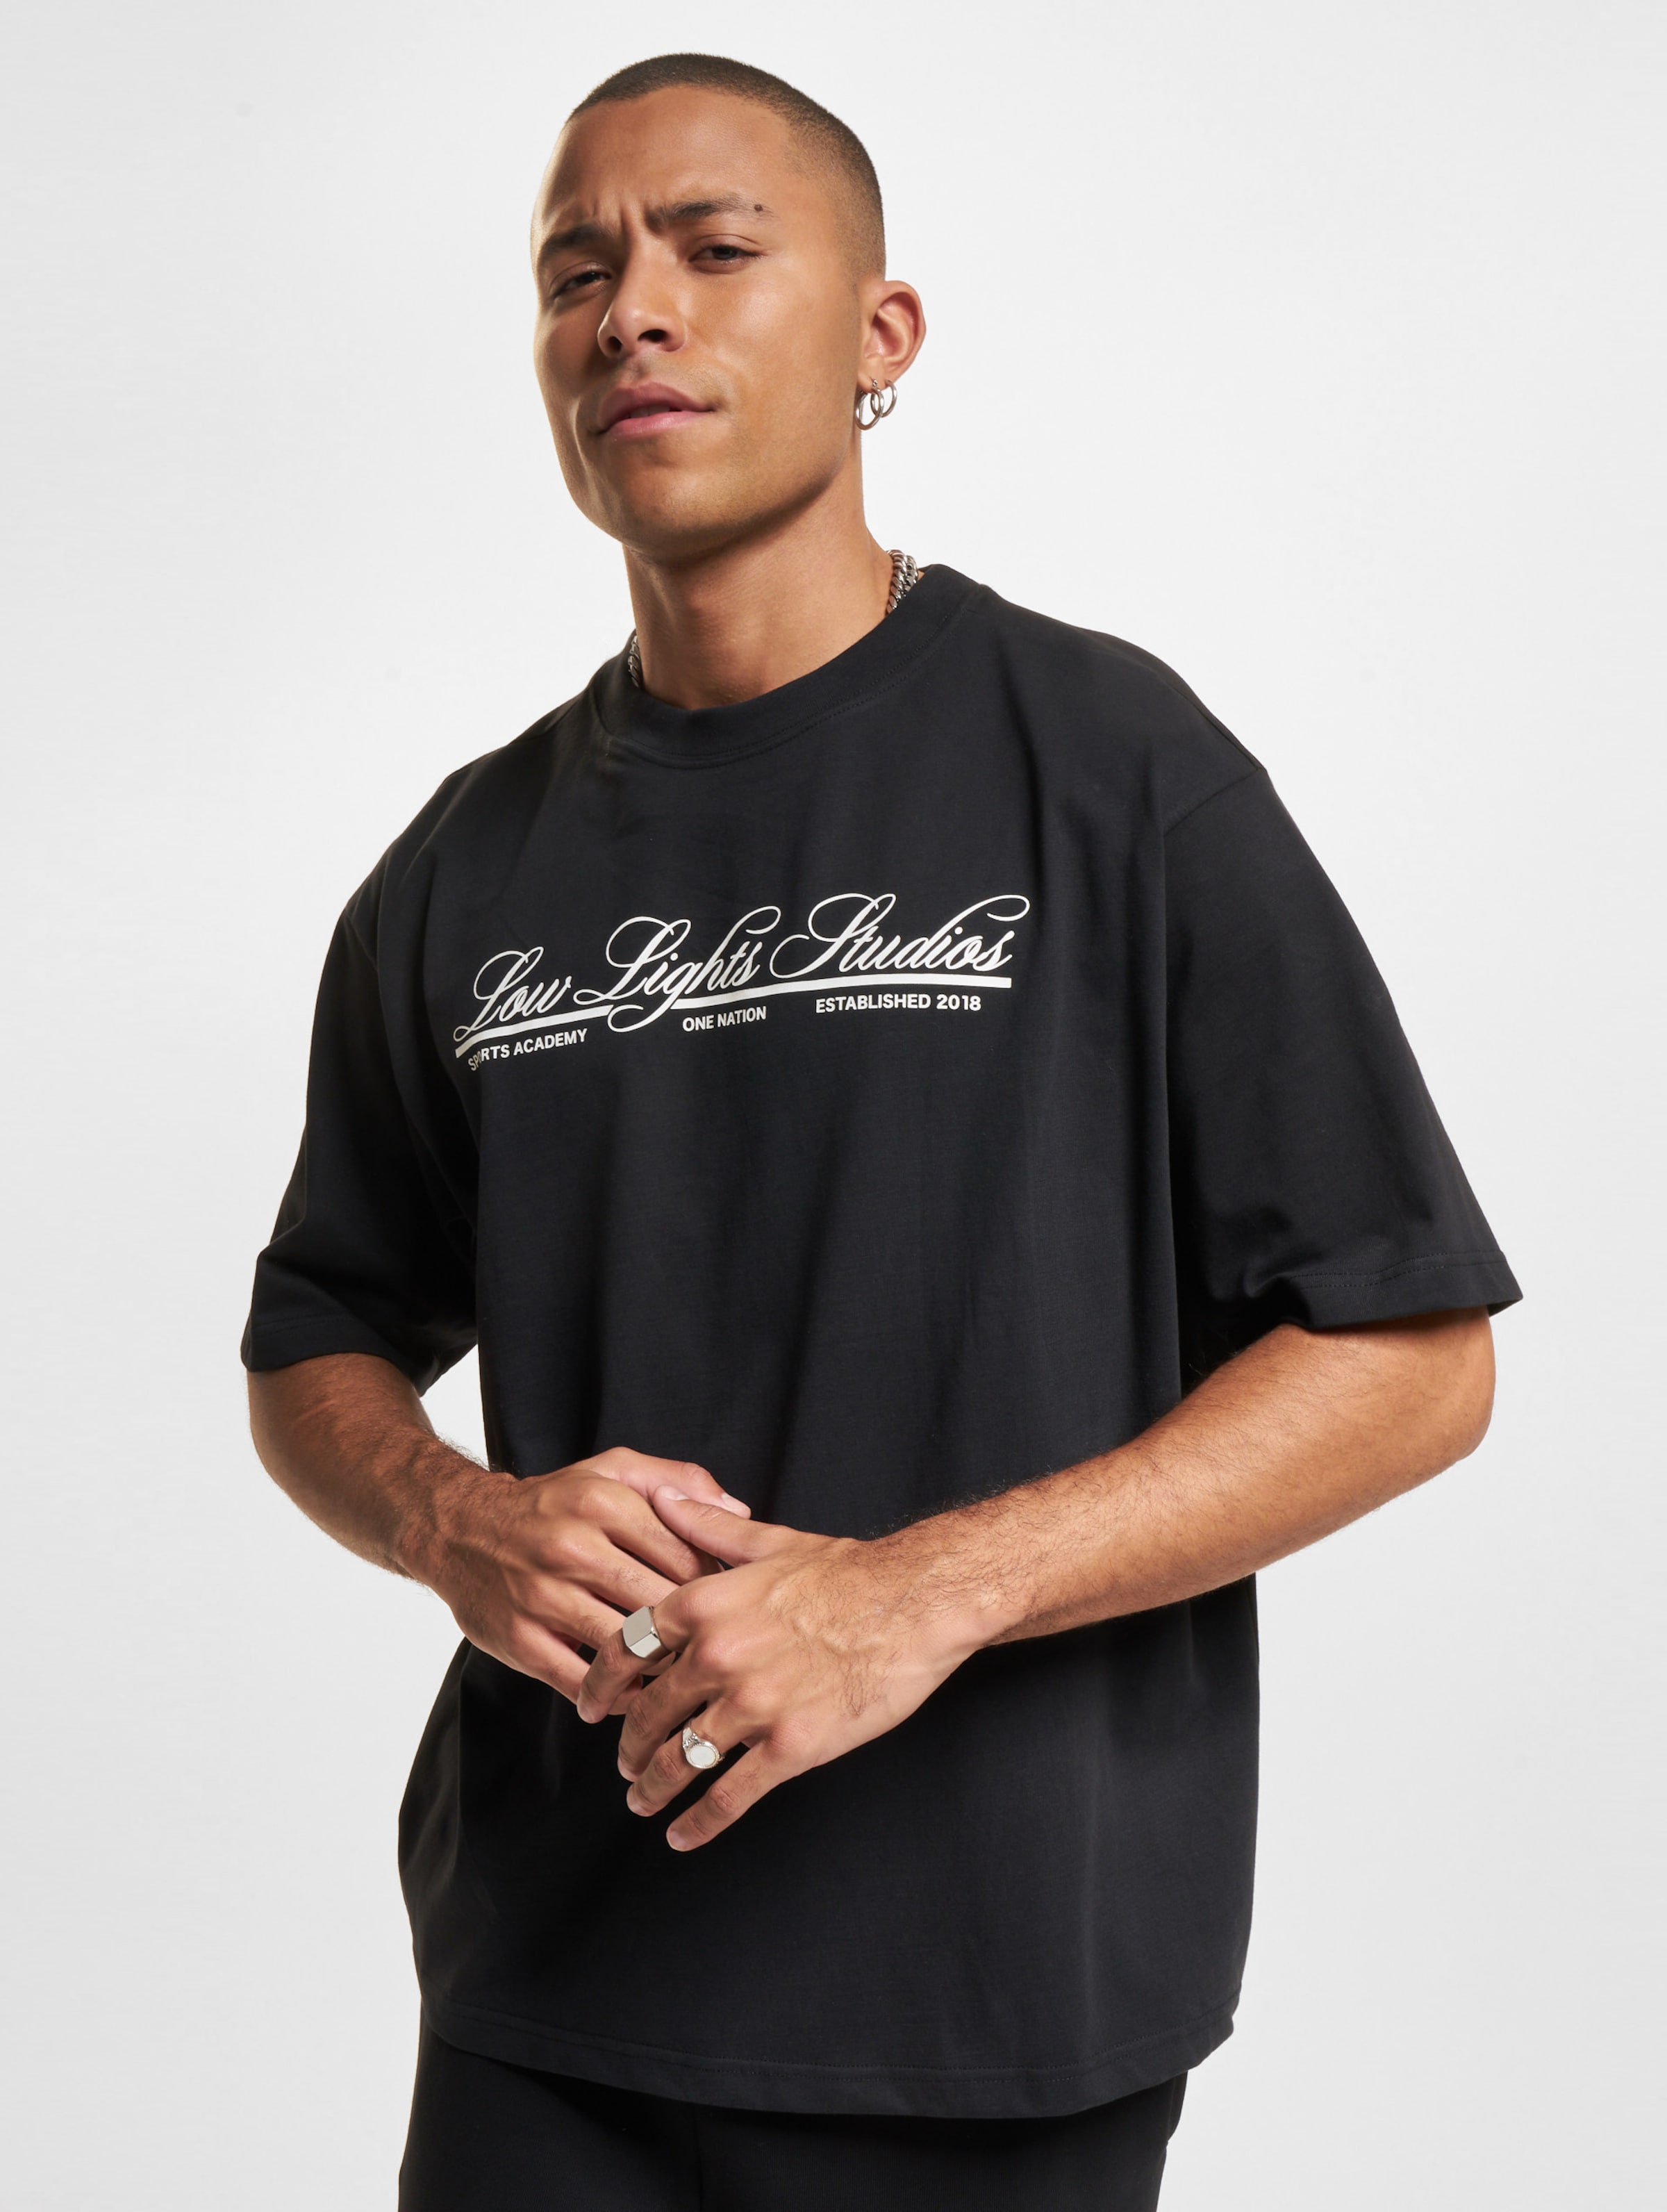 Low Lights Studios National T-Shirt Männer,Unisex op kleur zwart, Maat L